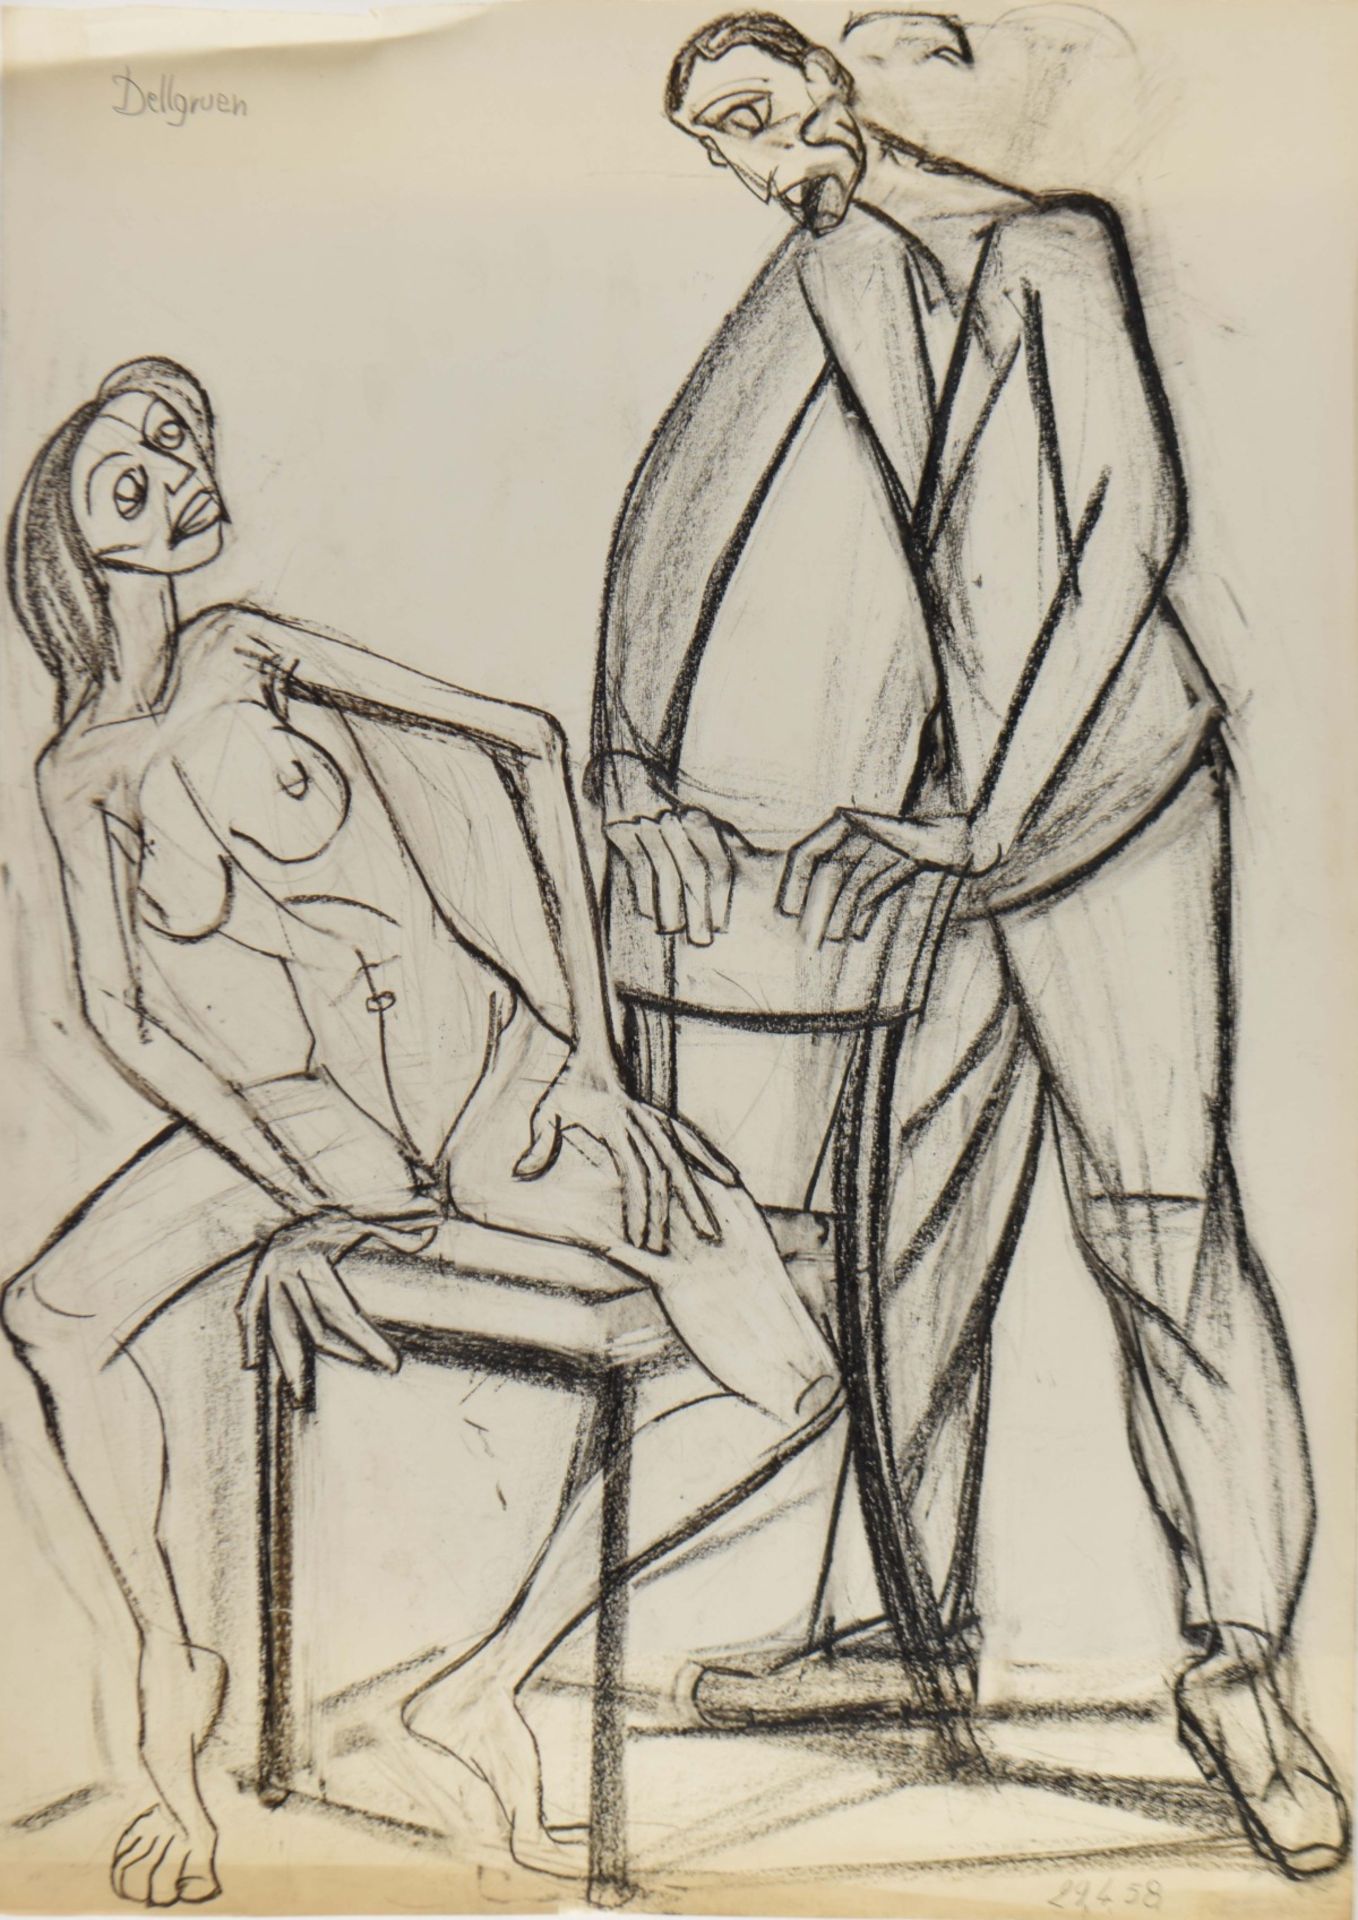 Dellgruen, Franziskus (1901 Köln - 1984 Berlin) Kohlezeichnung, Paar, erotische Darstellung der Frau - Bild 2 aus 3